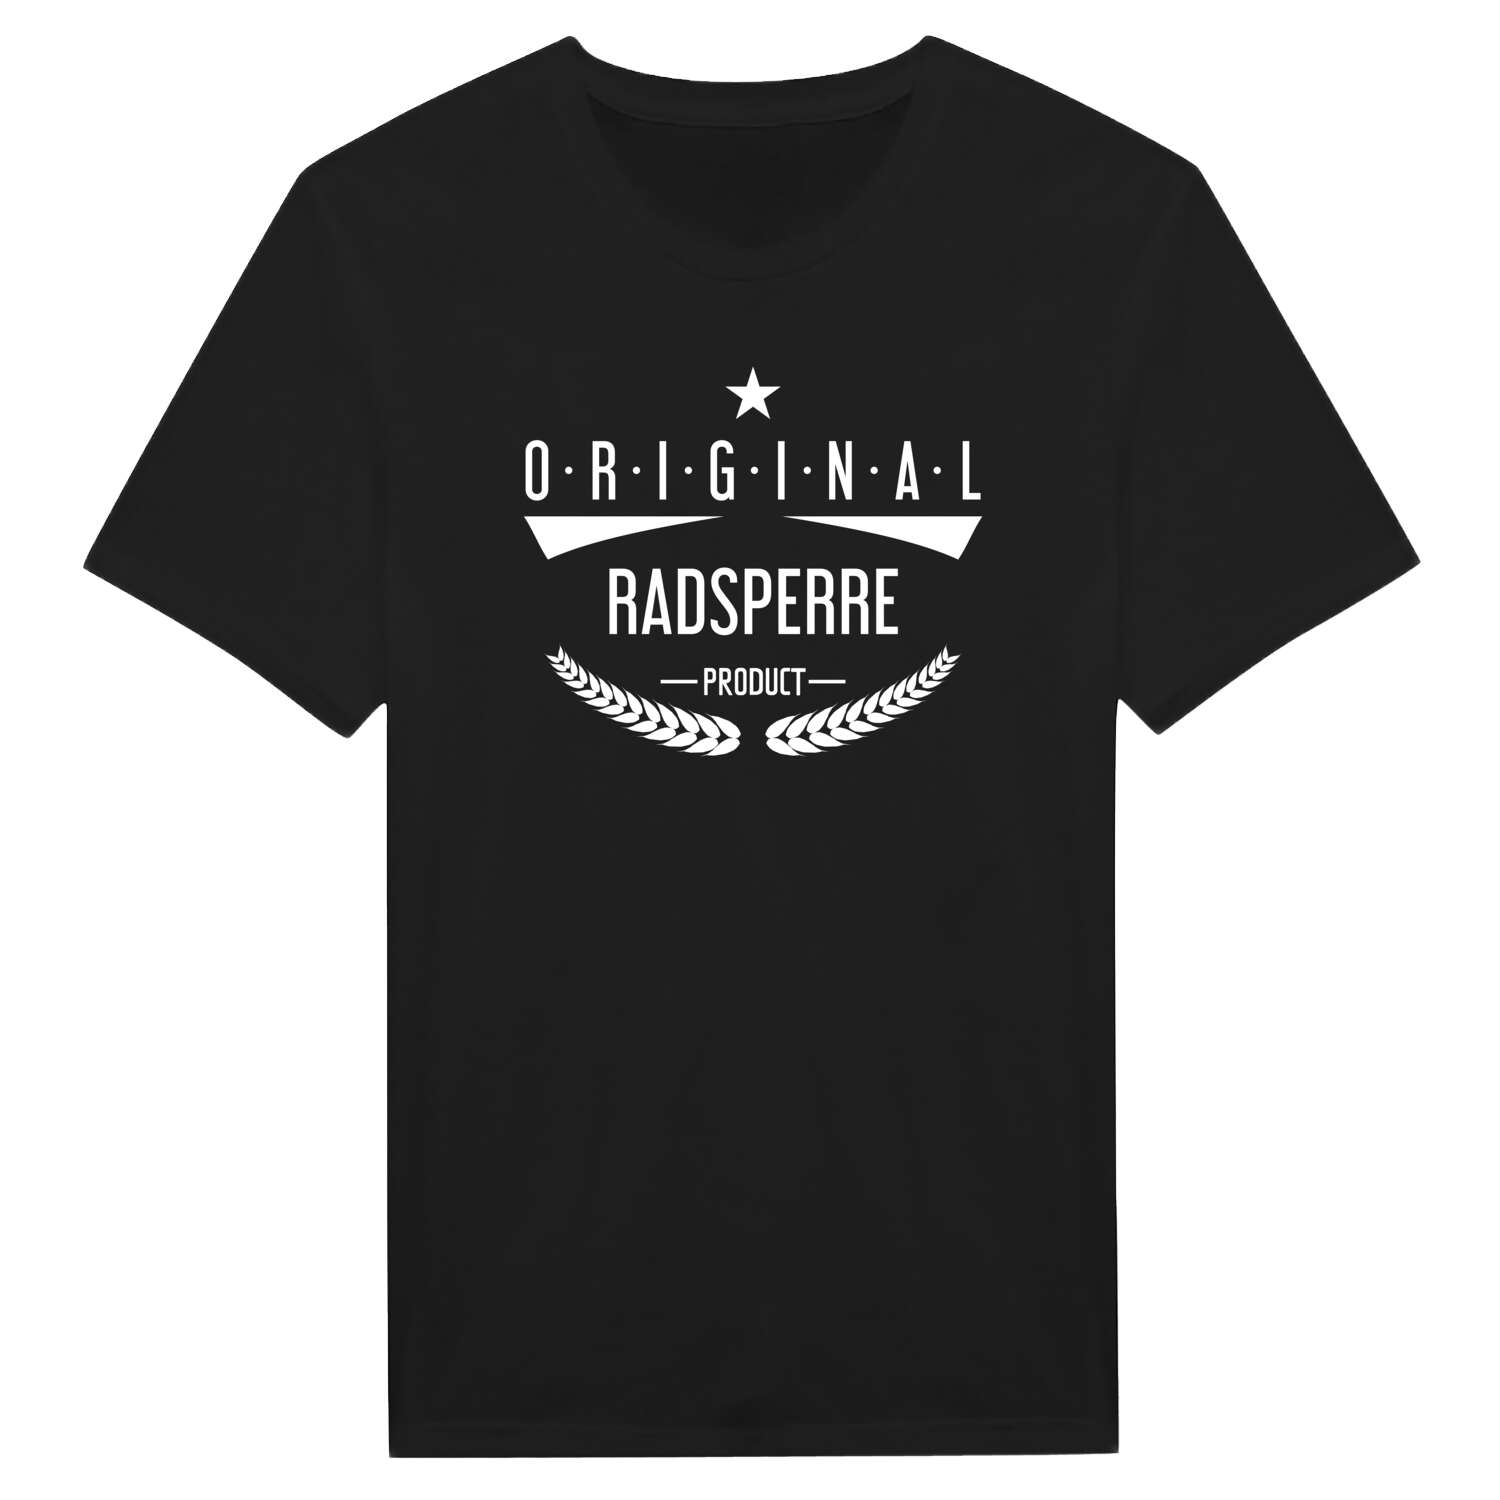 Radsperre T-Shirt »Original Product«